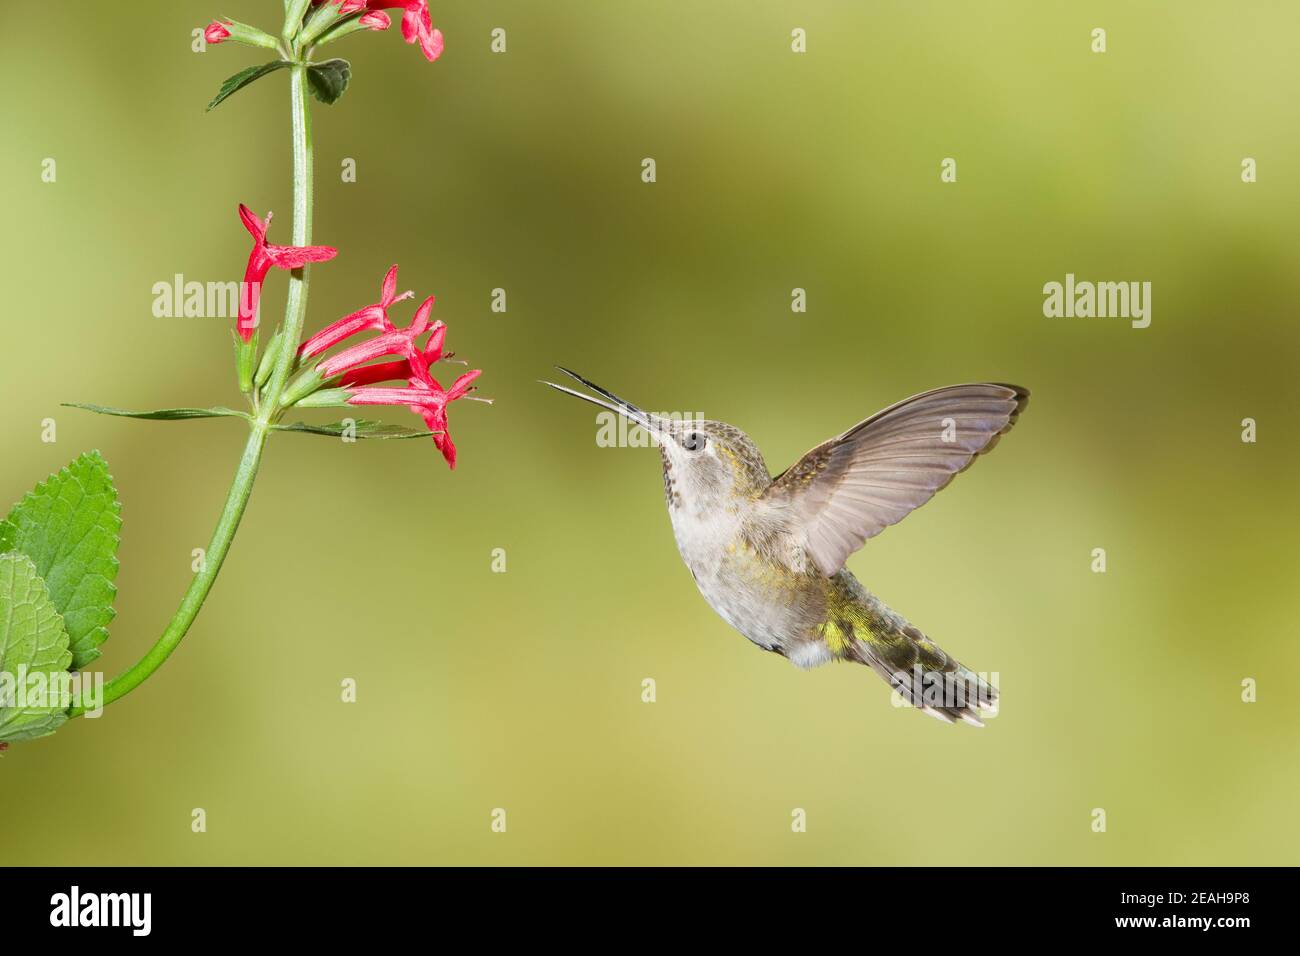 Annas Kolibri Jungtier, Calypte anna, füttert an Stachys Coccinea Blume. Stockfoto